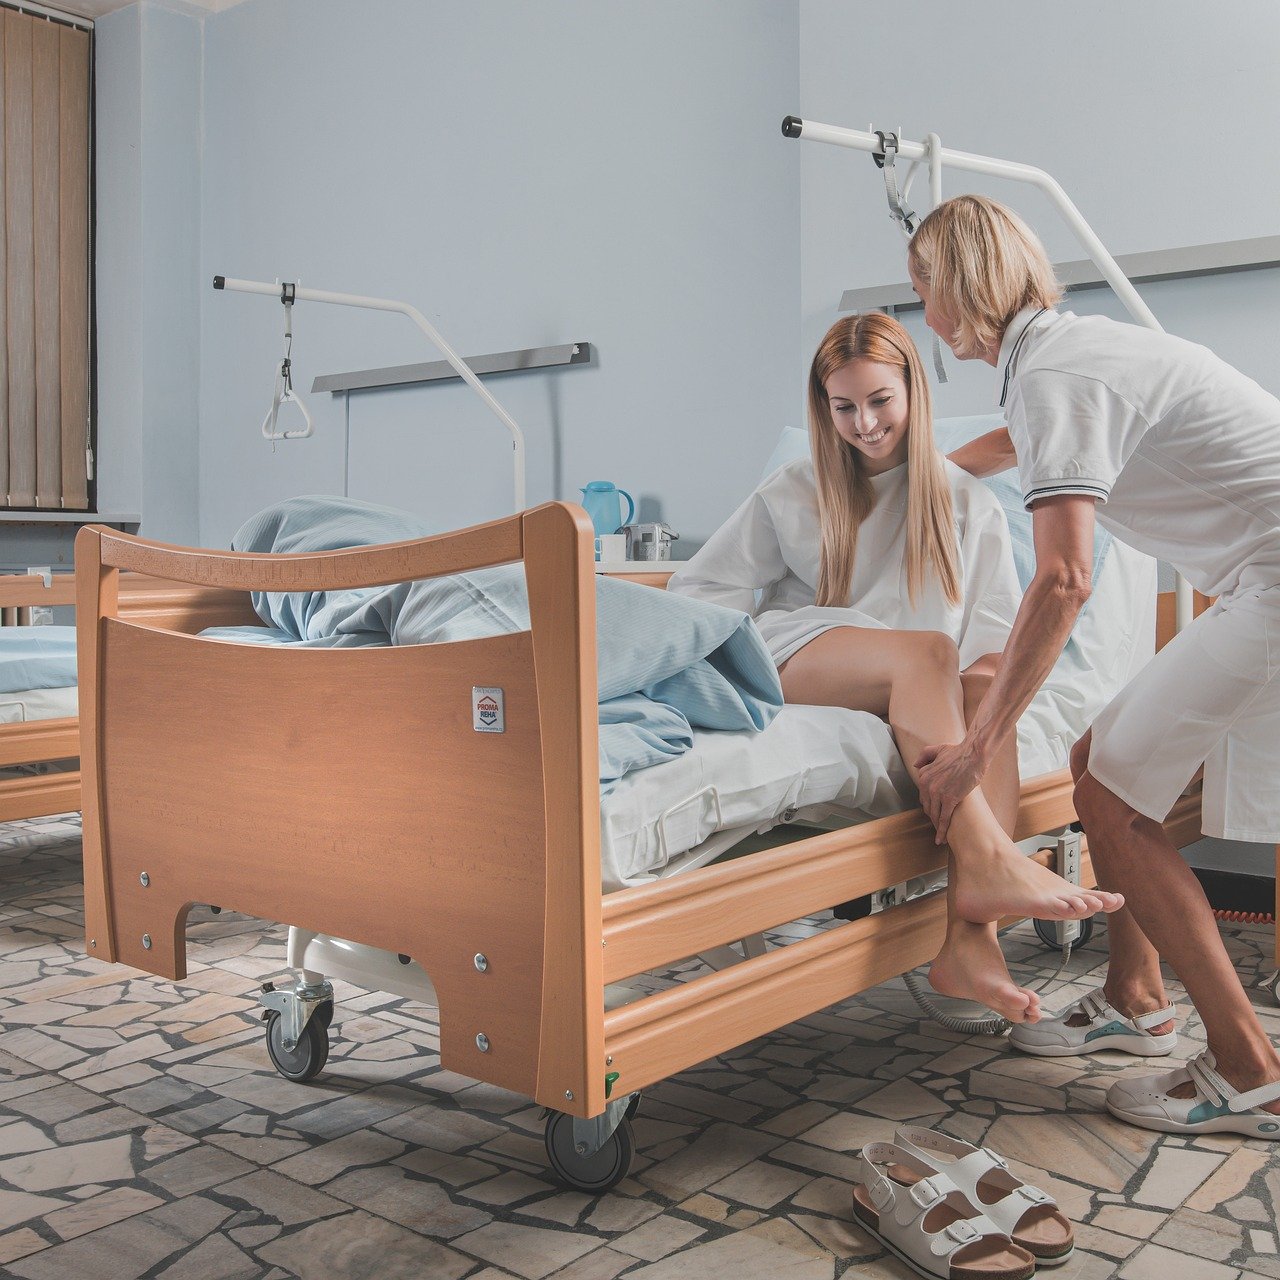 Slika prikazuje mediinsku sestru koja pomaže pacijentici ustati iz bolničkog kreveta.